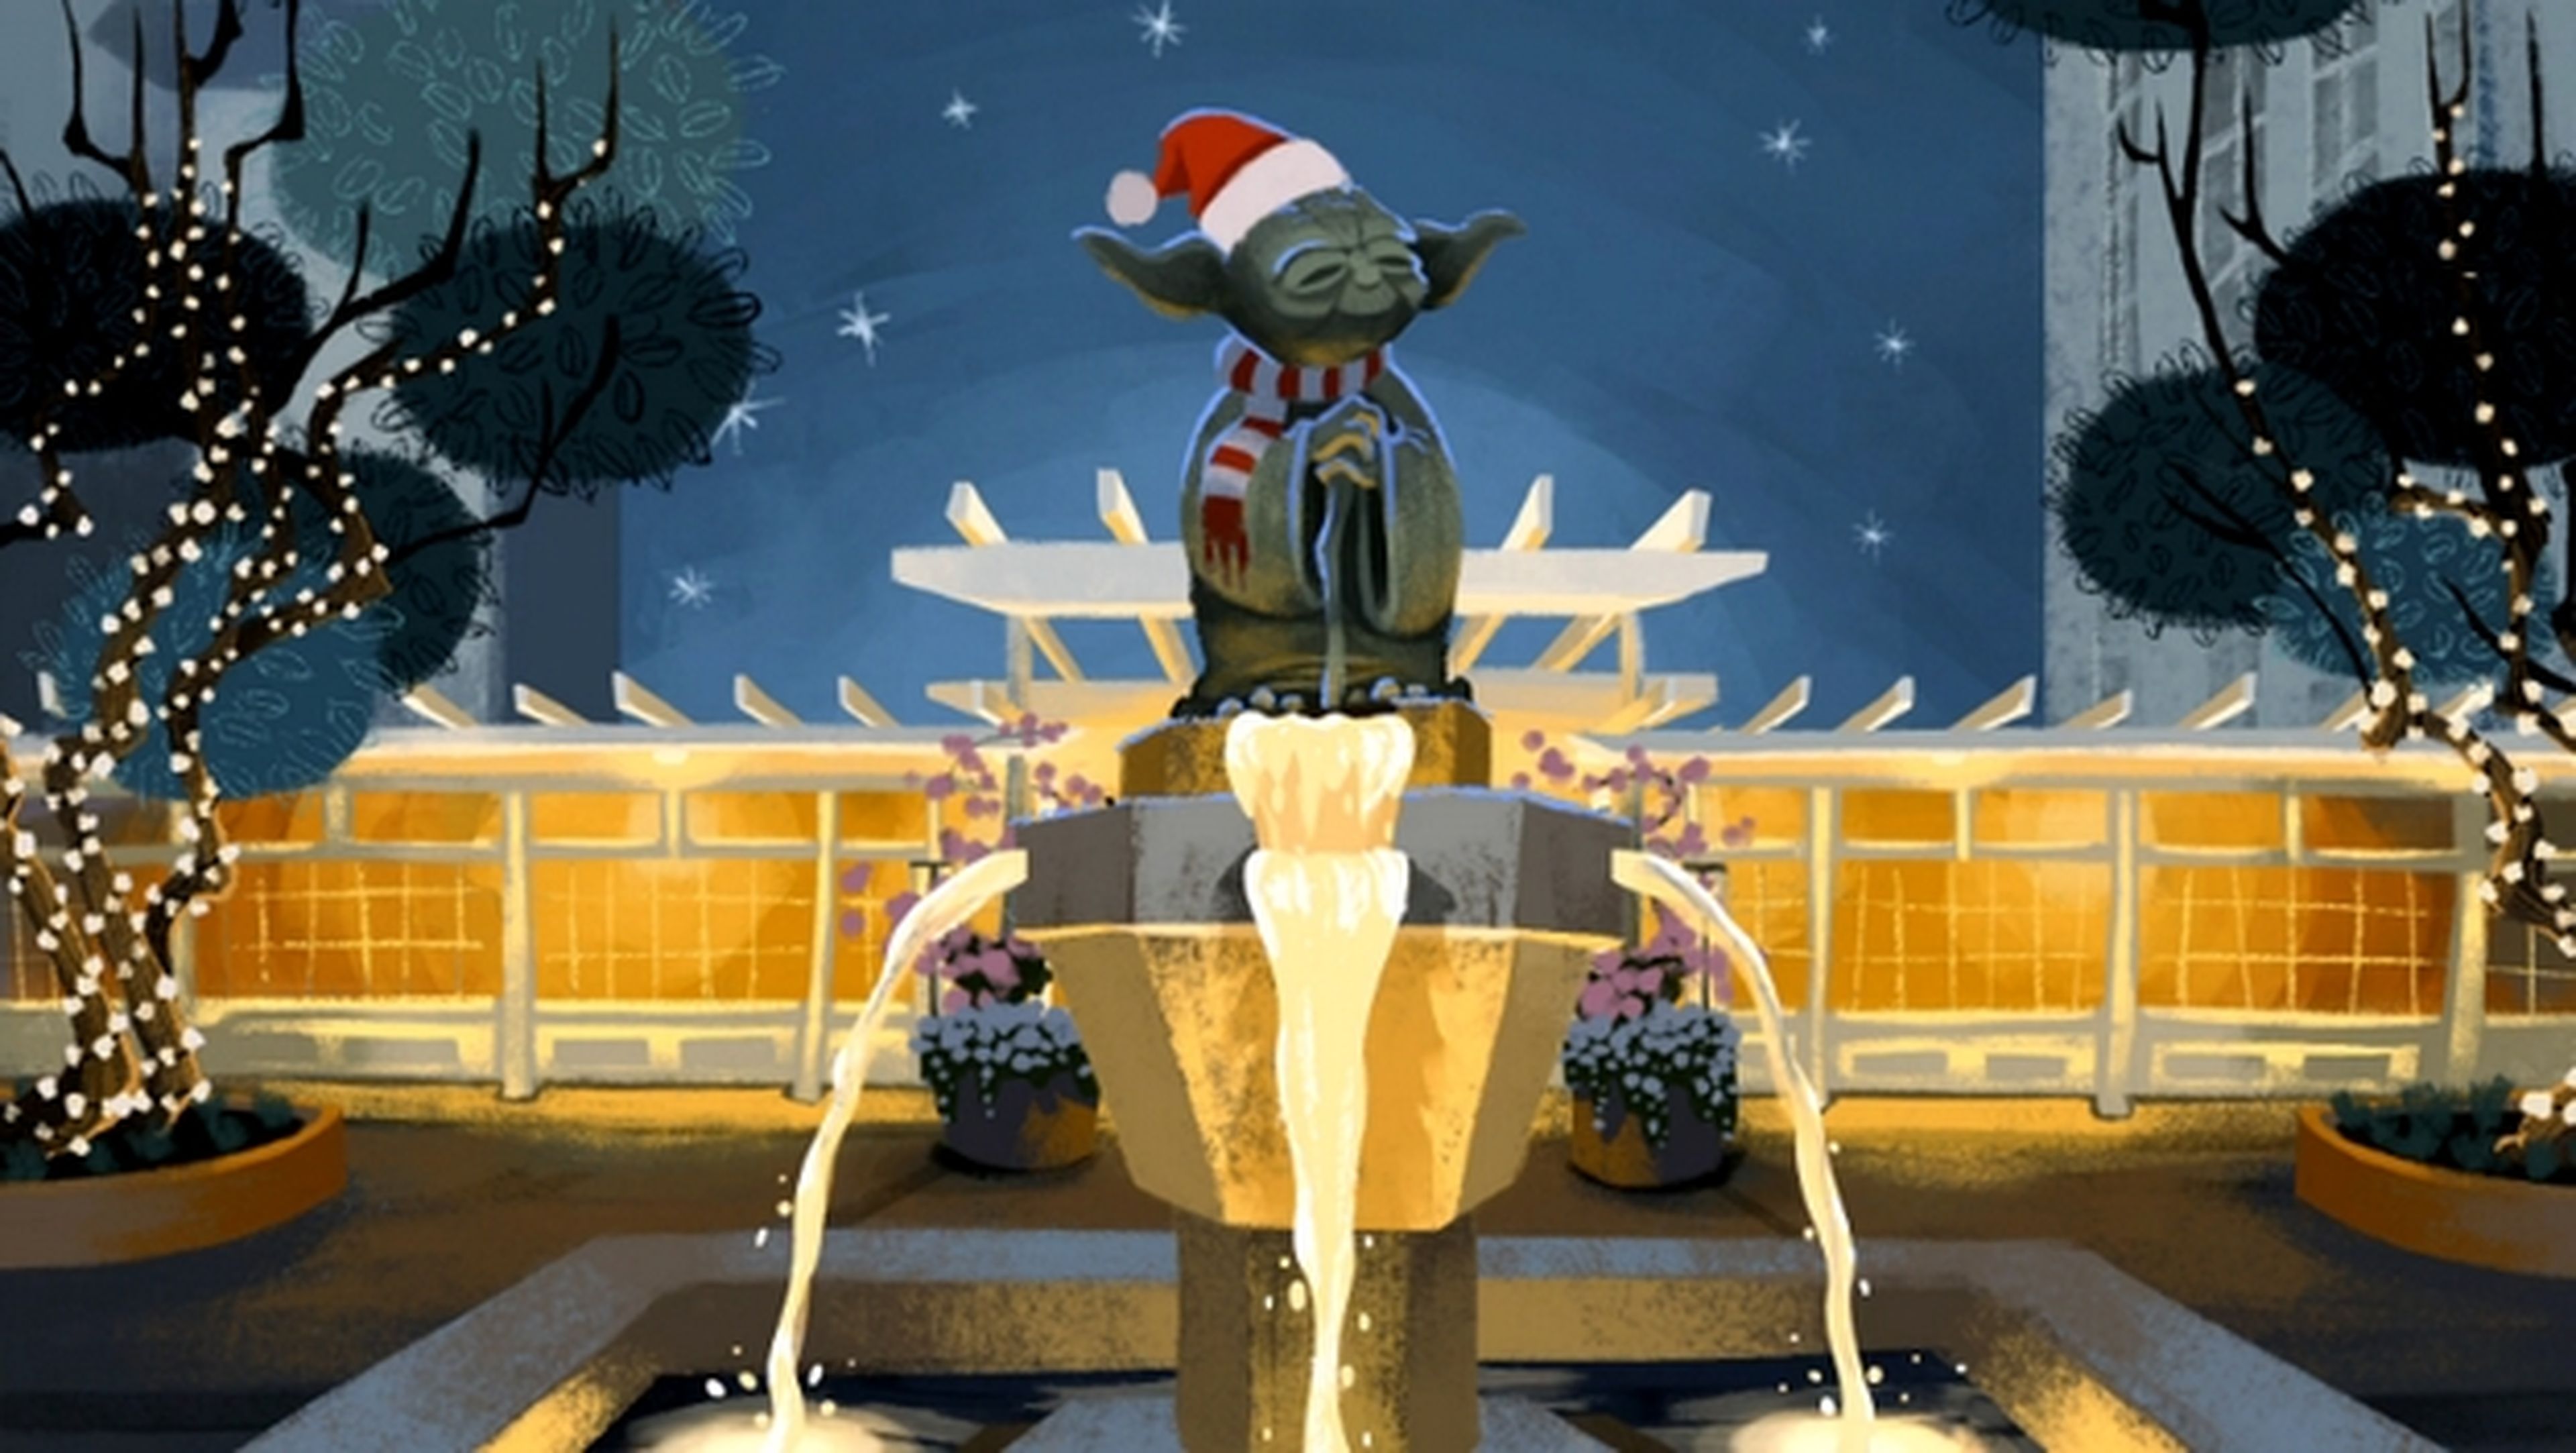 Star Wars te felicita la Navidad con esta postal animada.